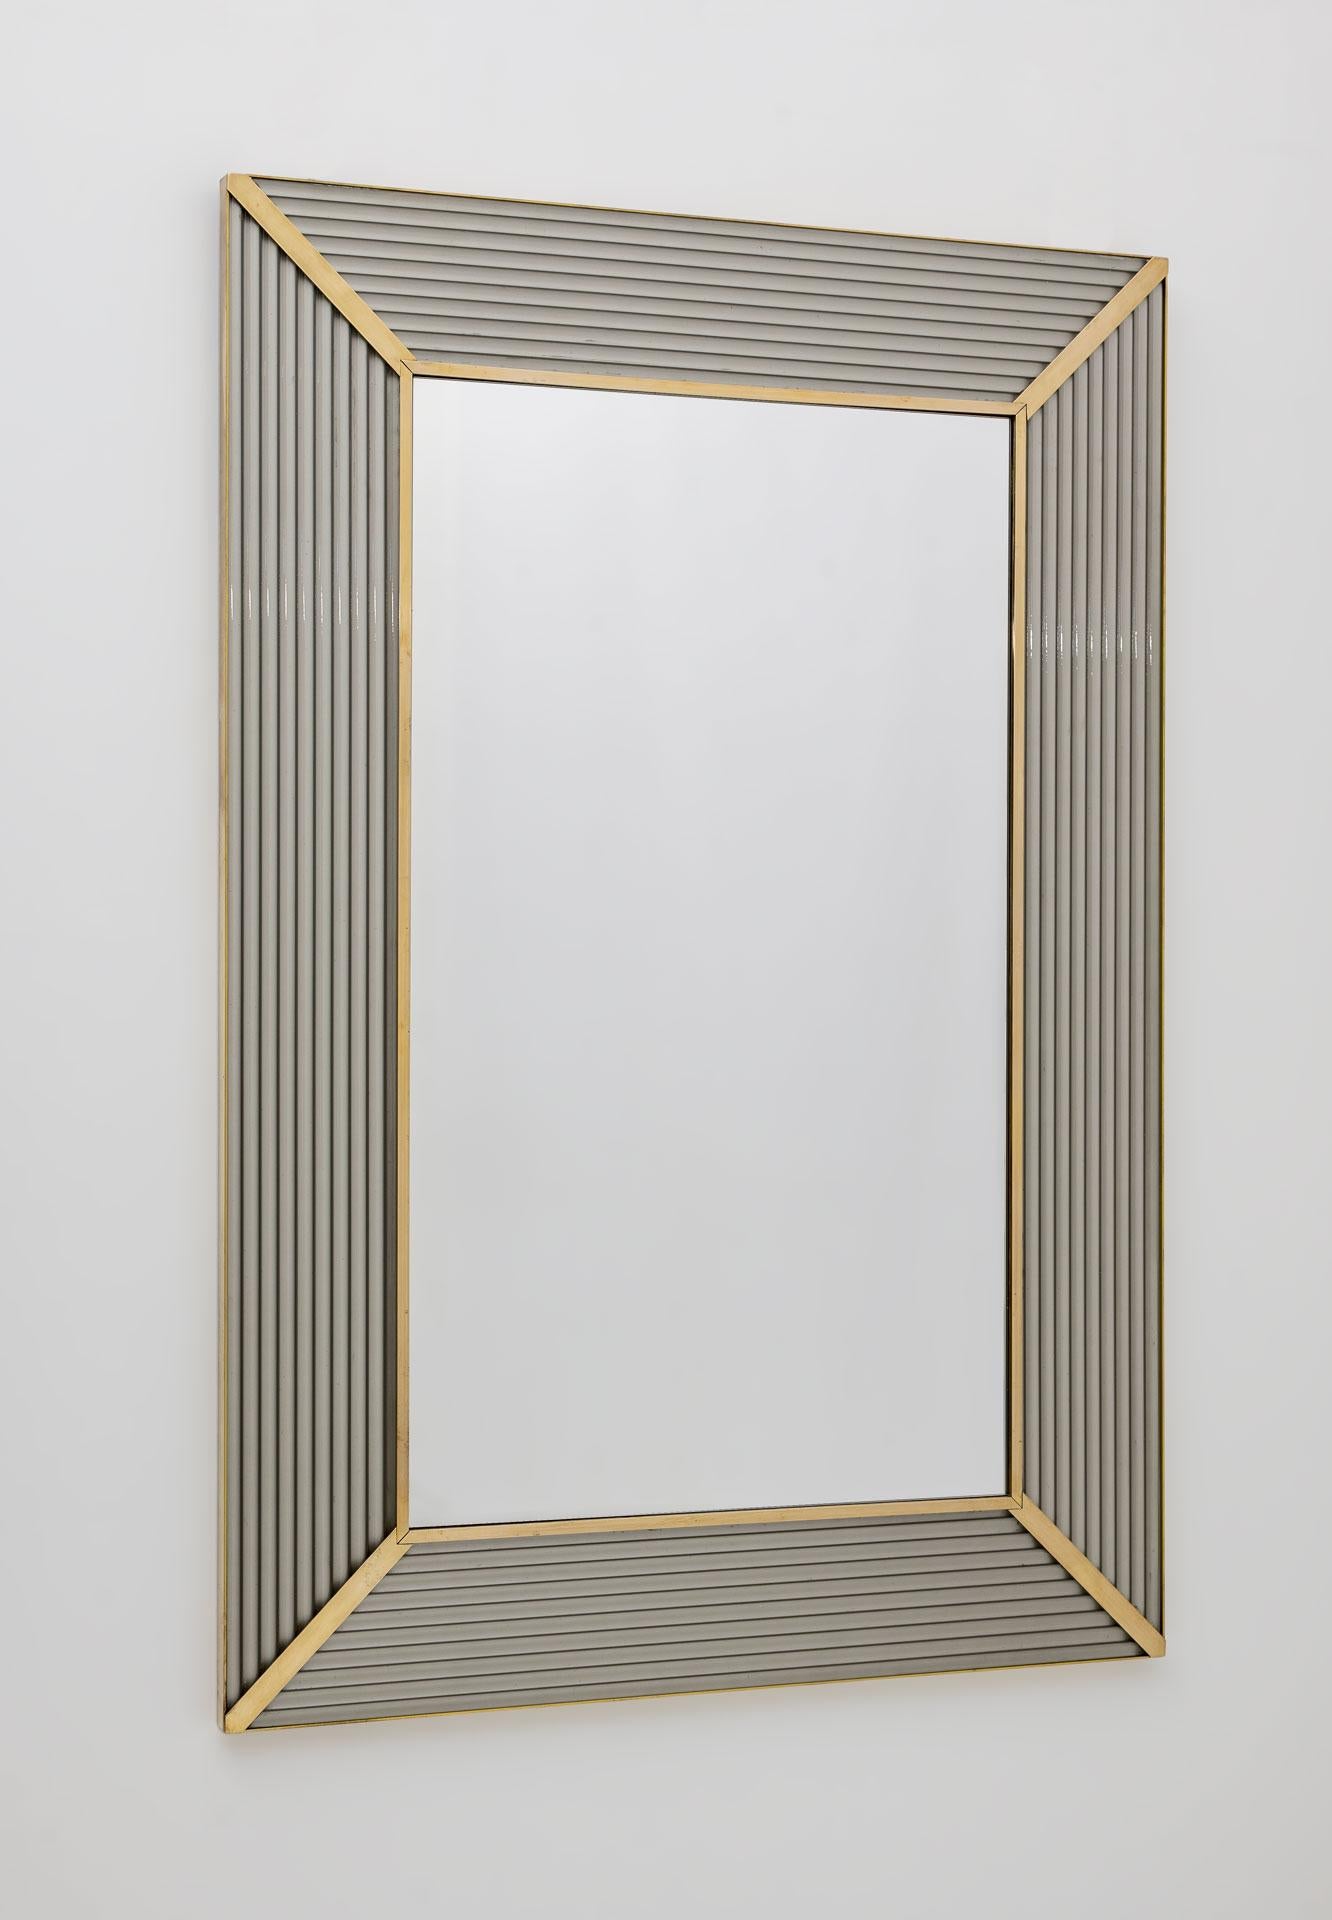 Miroir avec cadre en verre Murano gris, avec moulure en laiton, la structure du miroir est en bois.
Le miroir peut être accroché aussi bien à la verticale qu'à l'horizontale